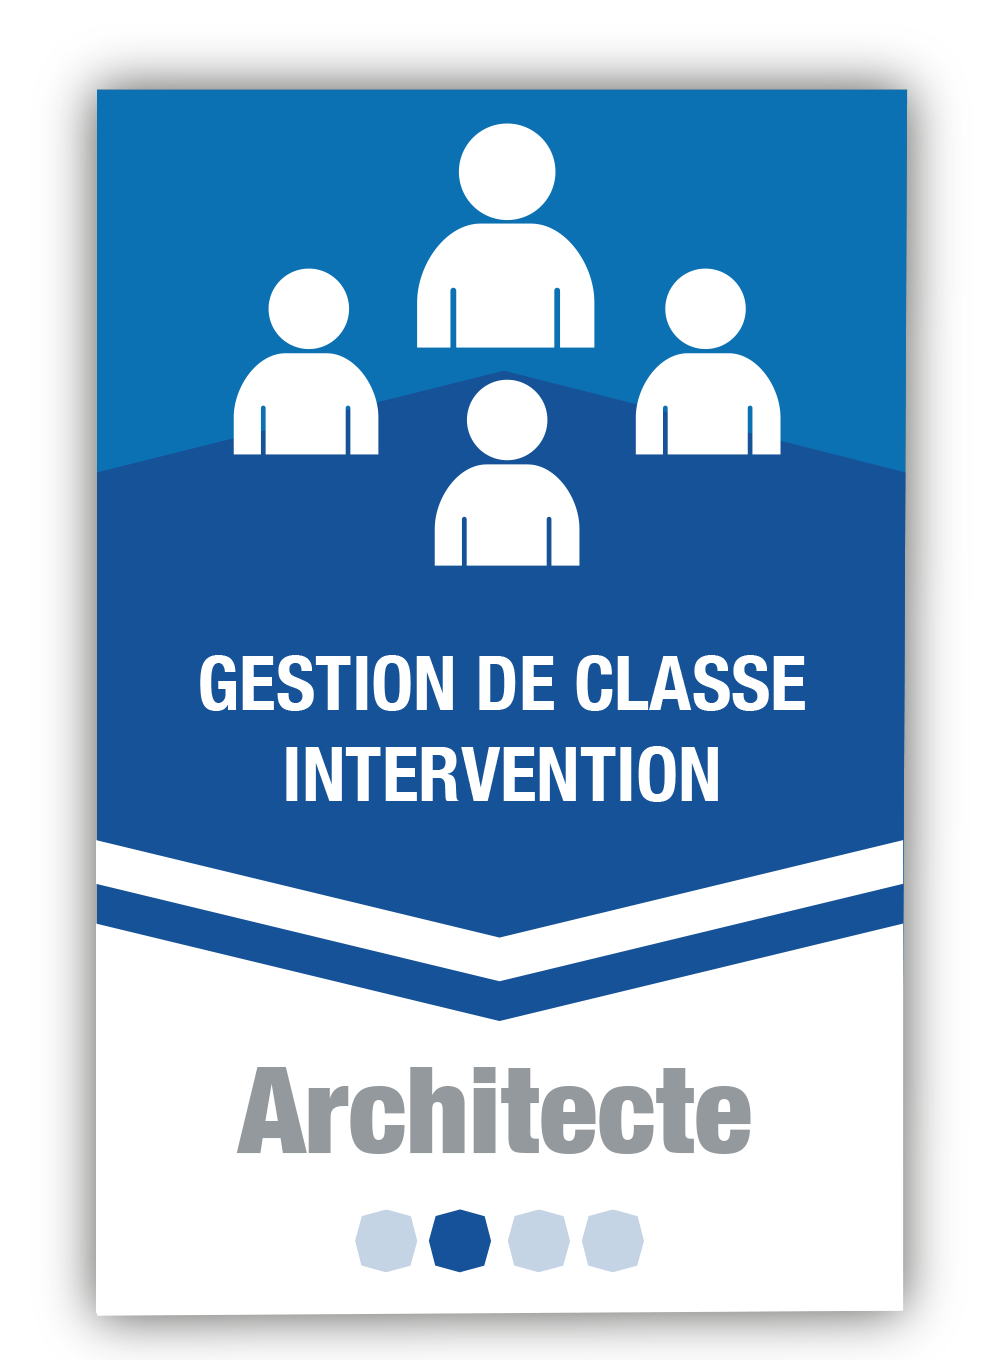 Gestion de classe - Intervention 2 - Architecte